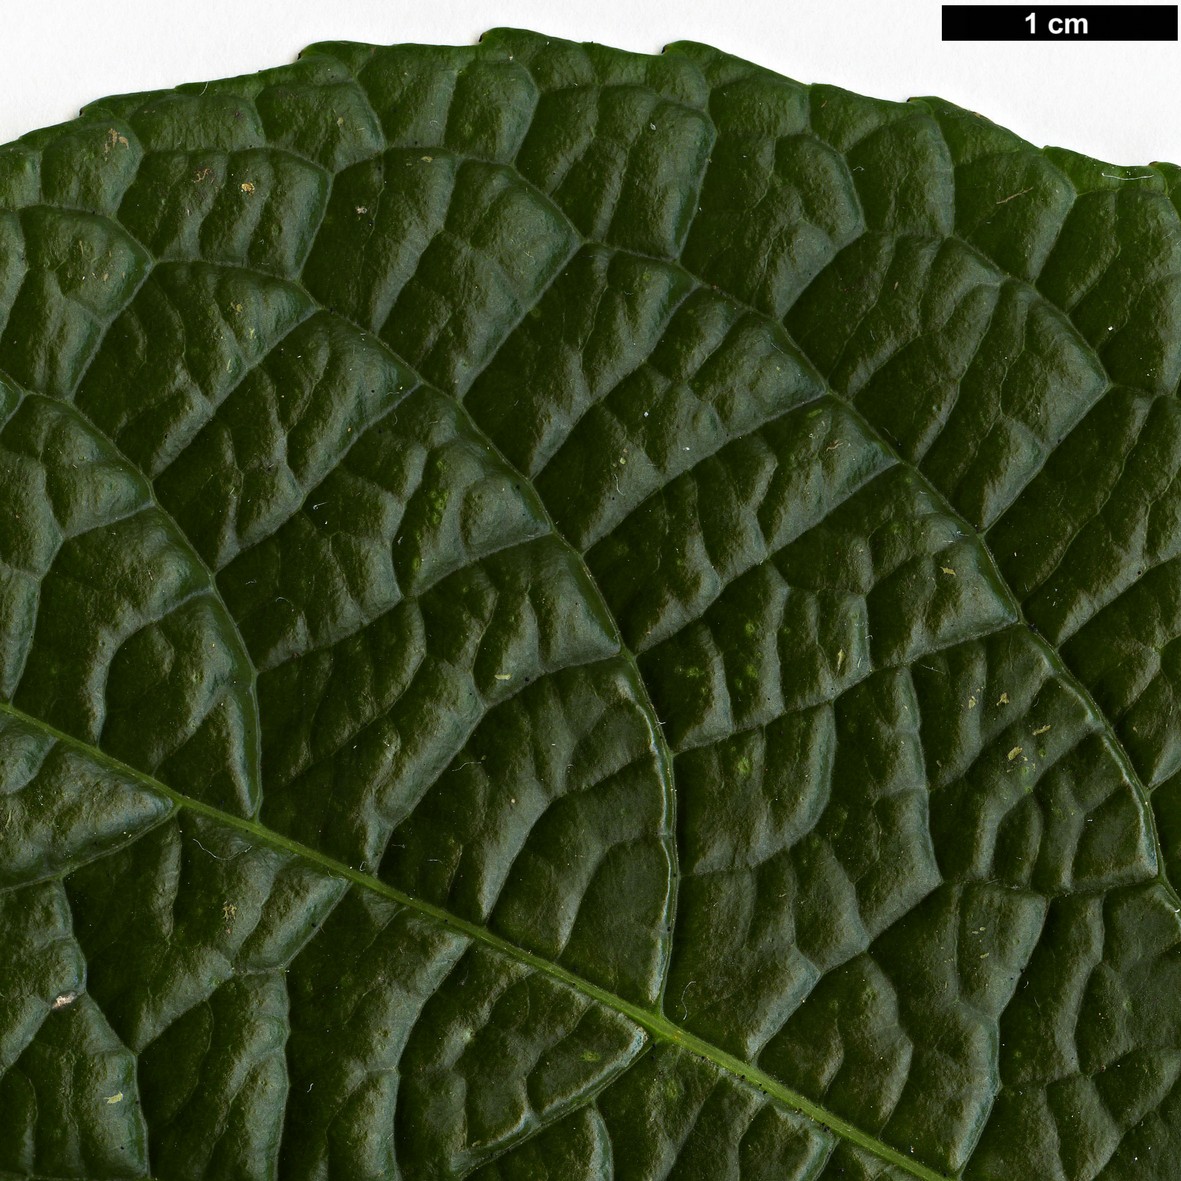 High resolution image: Family: Celastraceae - Genus: Celastrus - Taxon: glaucophyllus - SpeciesSub: var. rugosus